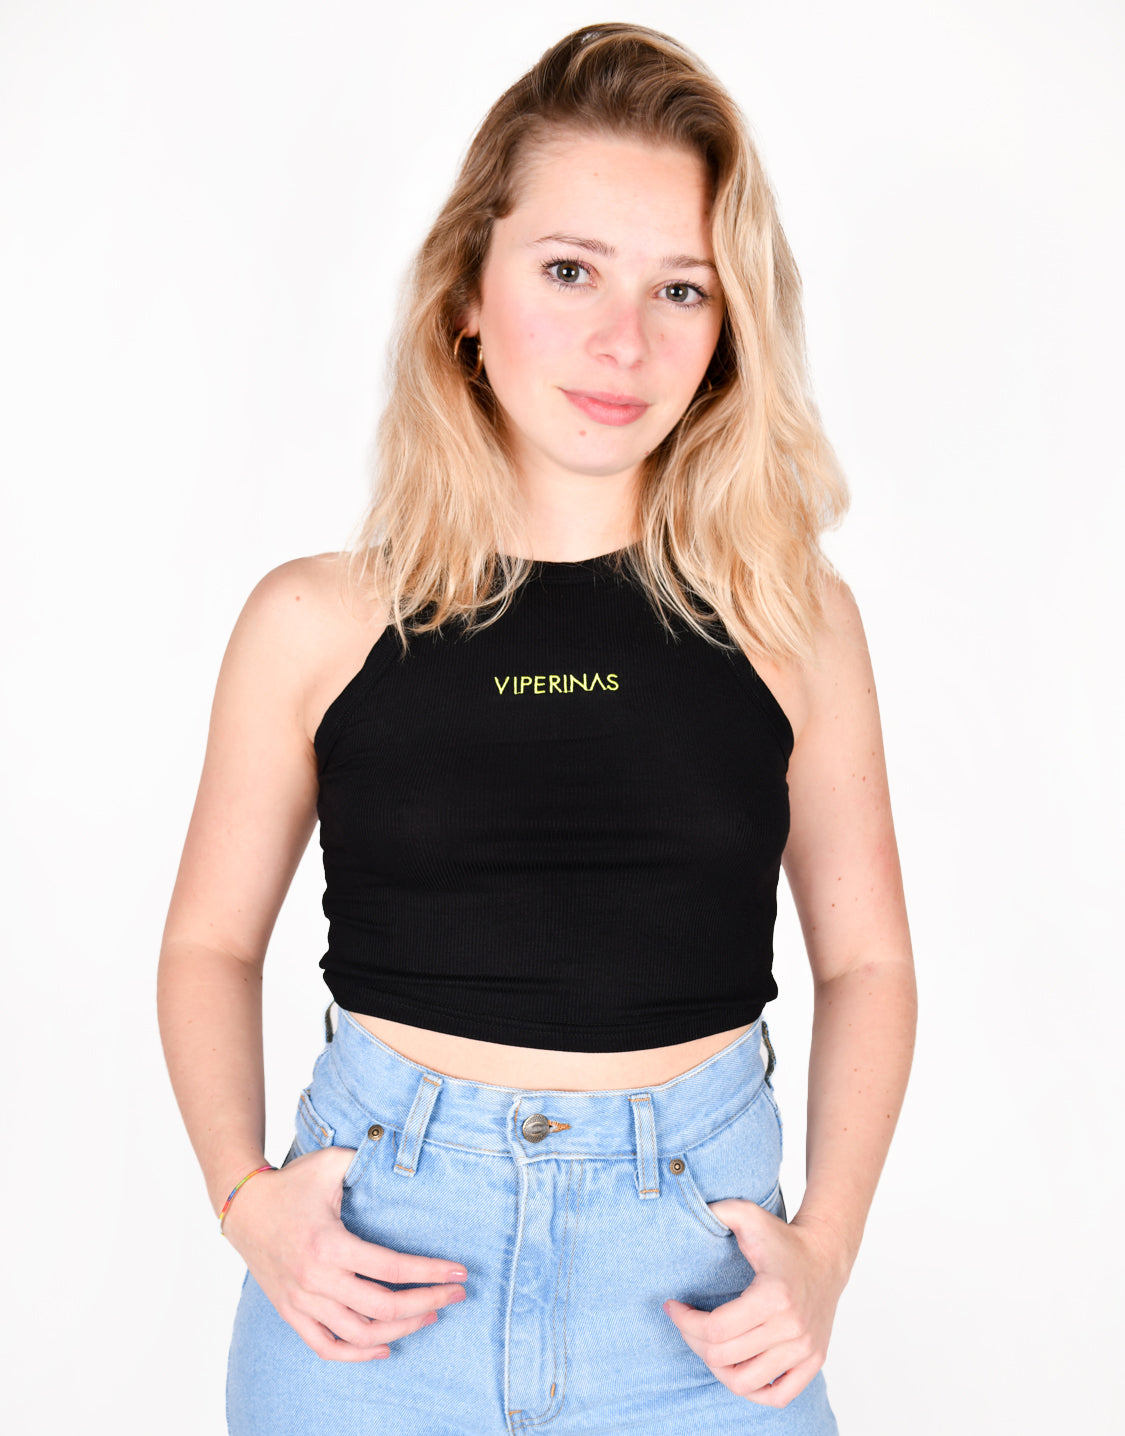 Viperinas Tank Top Embroidery Black | Comprar online ropa mujer y unisex Canarias | Envíos a todo el mundo | Moda urbana y de baño | Viperinas Original Brand 